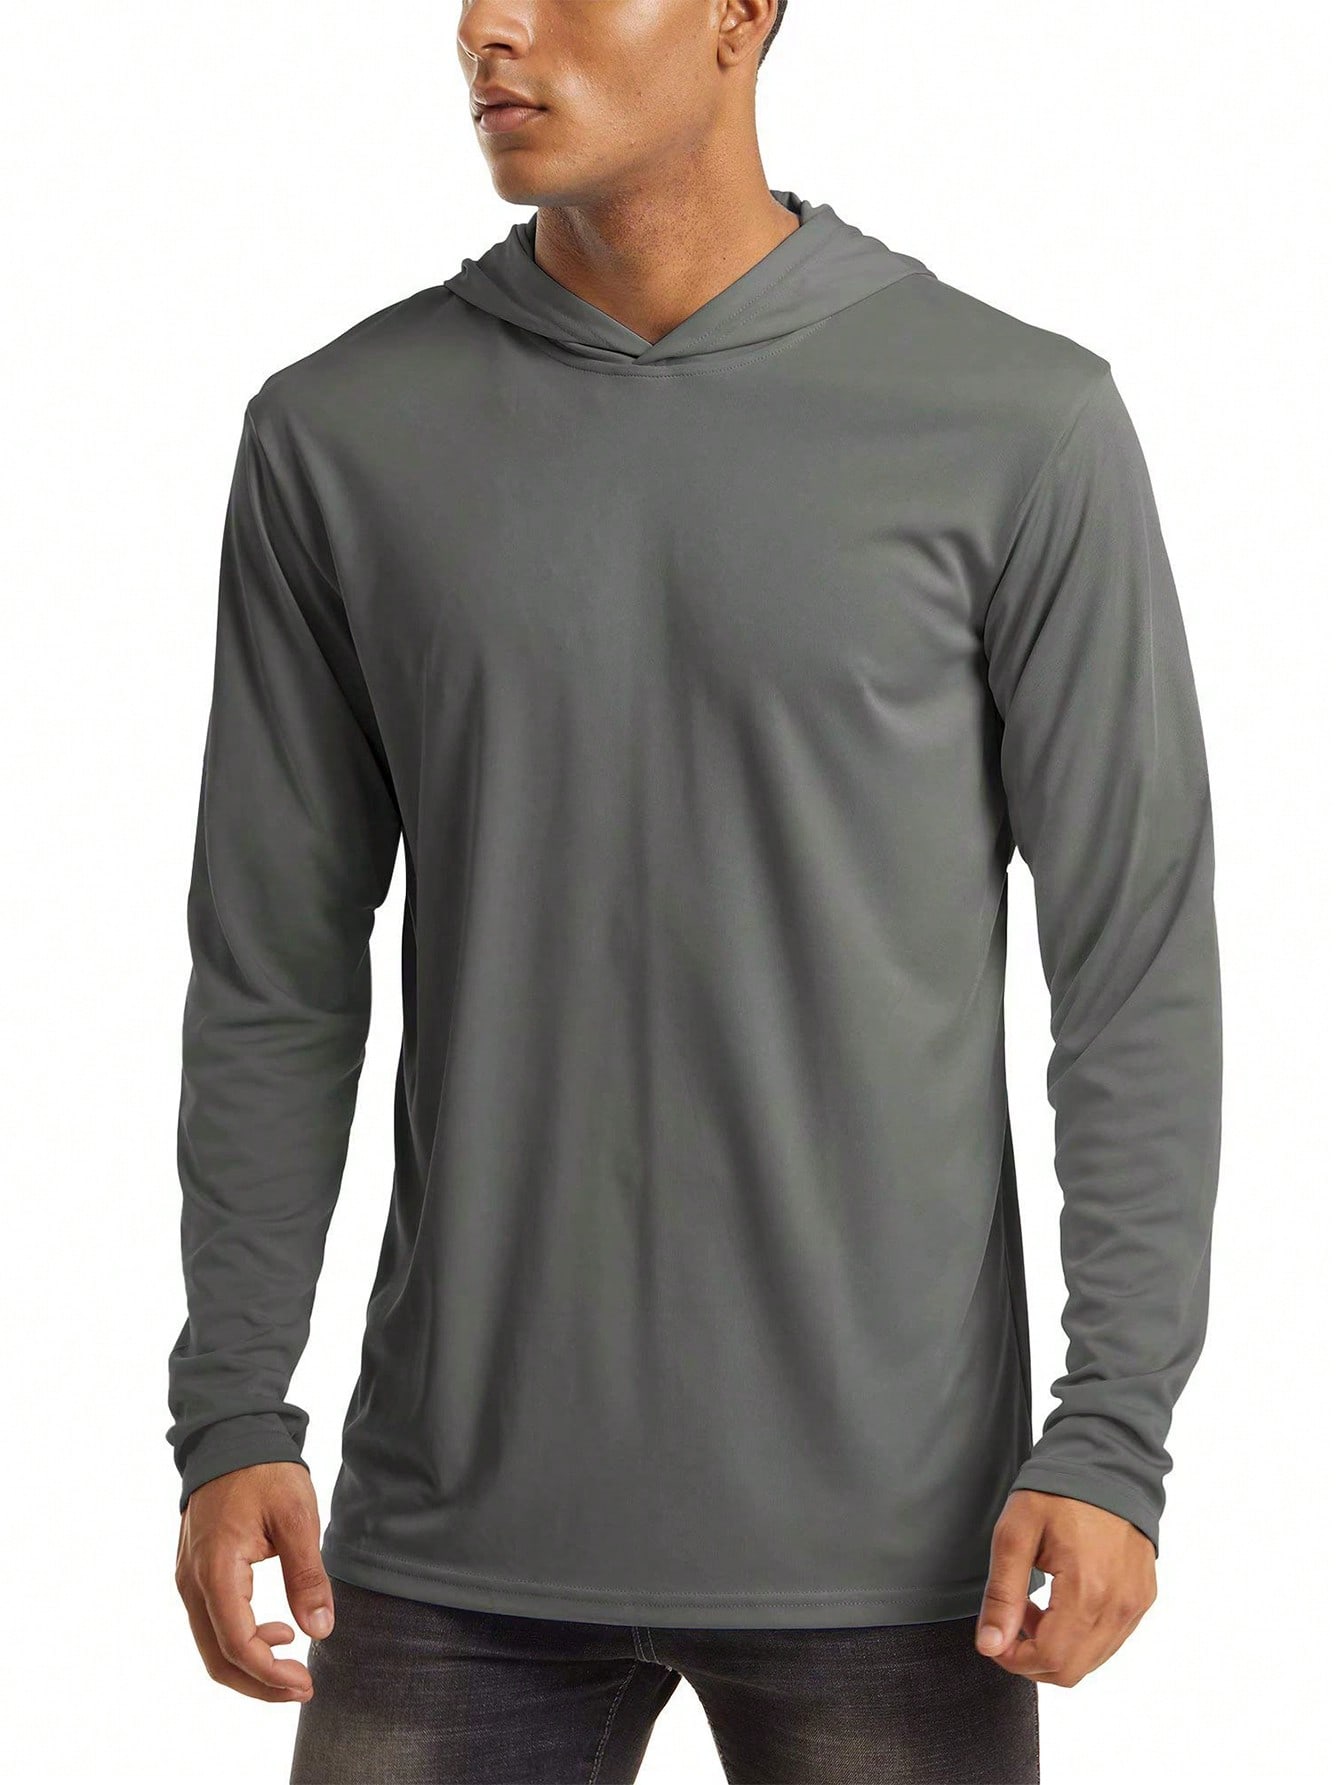 цена NASBING Мужская быстросохнущая спортивная футболка с капюшоном, темно-серый